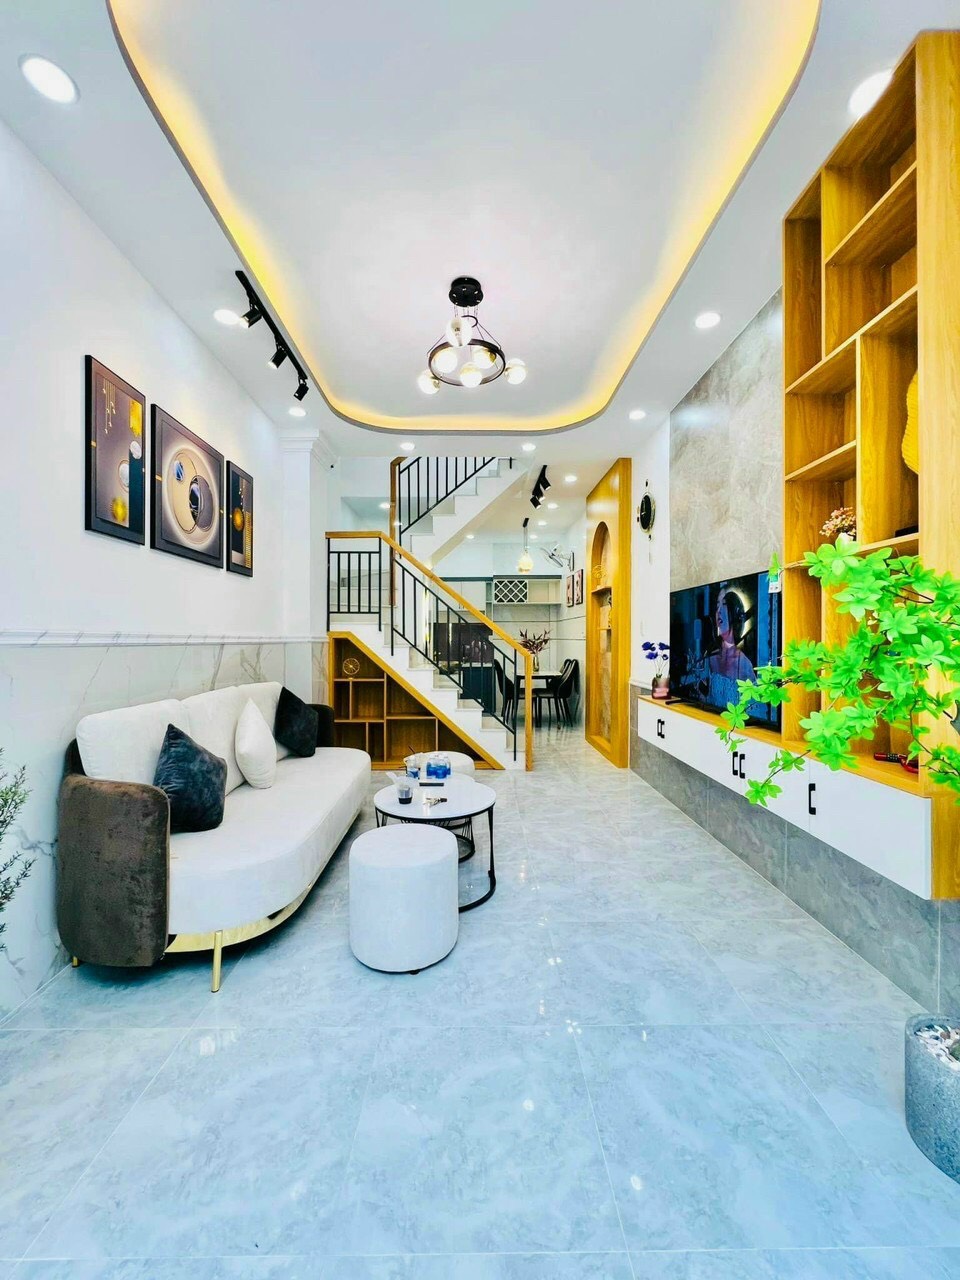 Hot! Bán nhà mới đẹp mặt tiền Chử Đồng Tử - Bành Văn Trân, 6 tầng, DT 55m2, giá 11 tỷ 5 TL